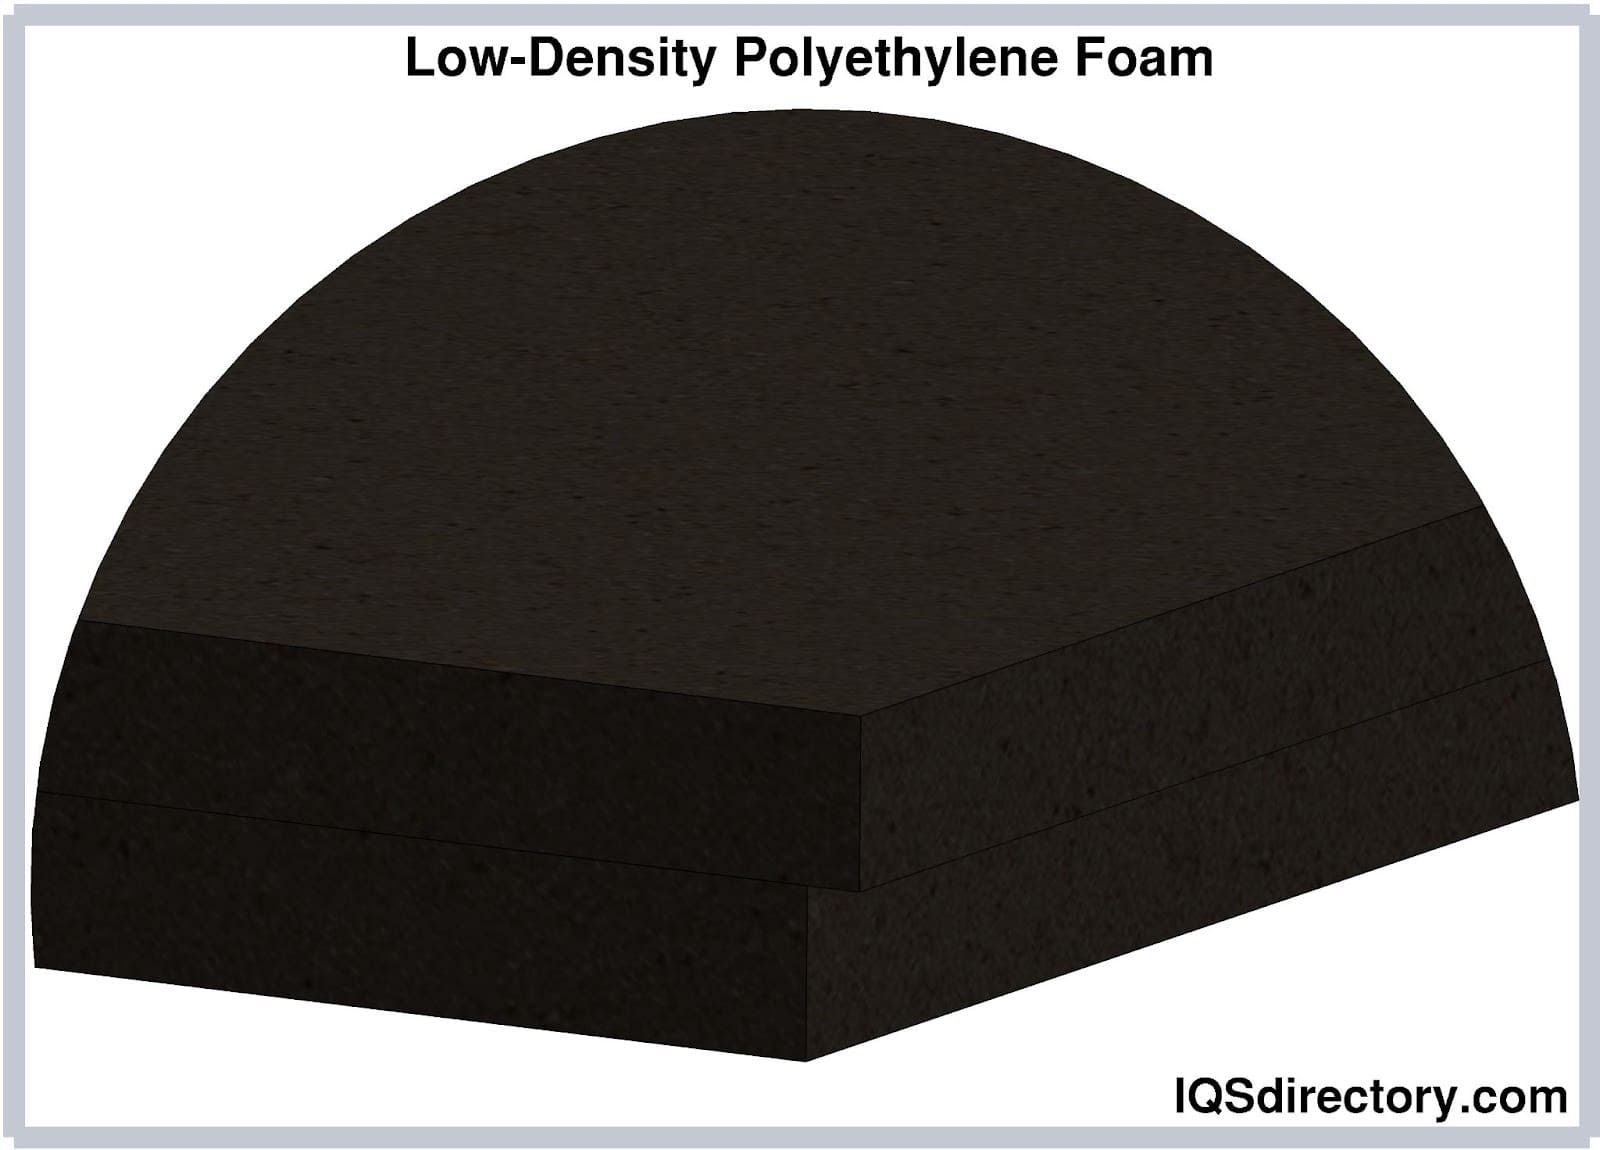 Low-Density Polyethylene Foam